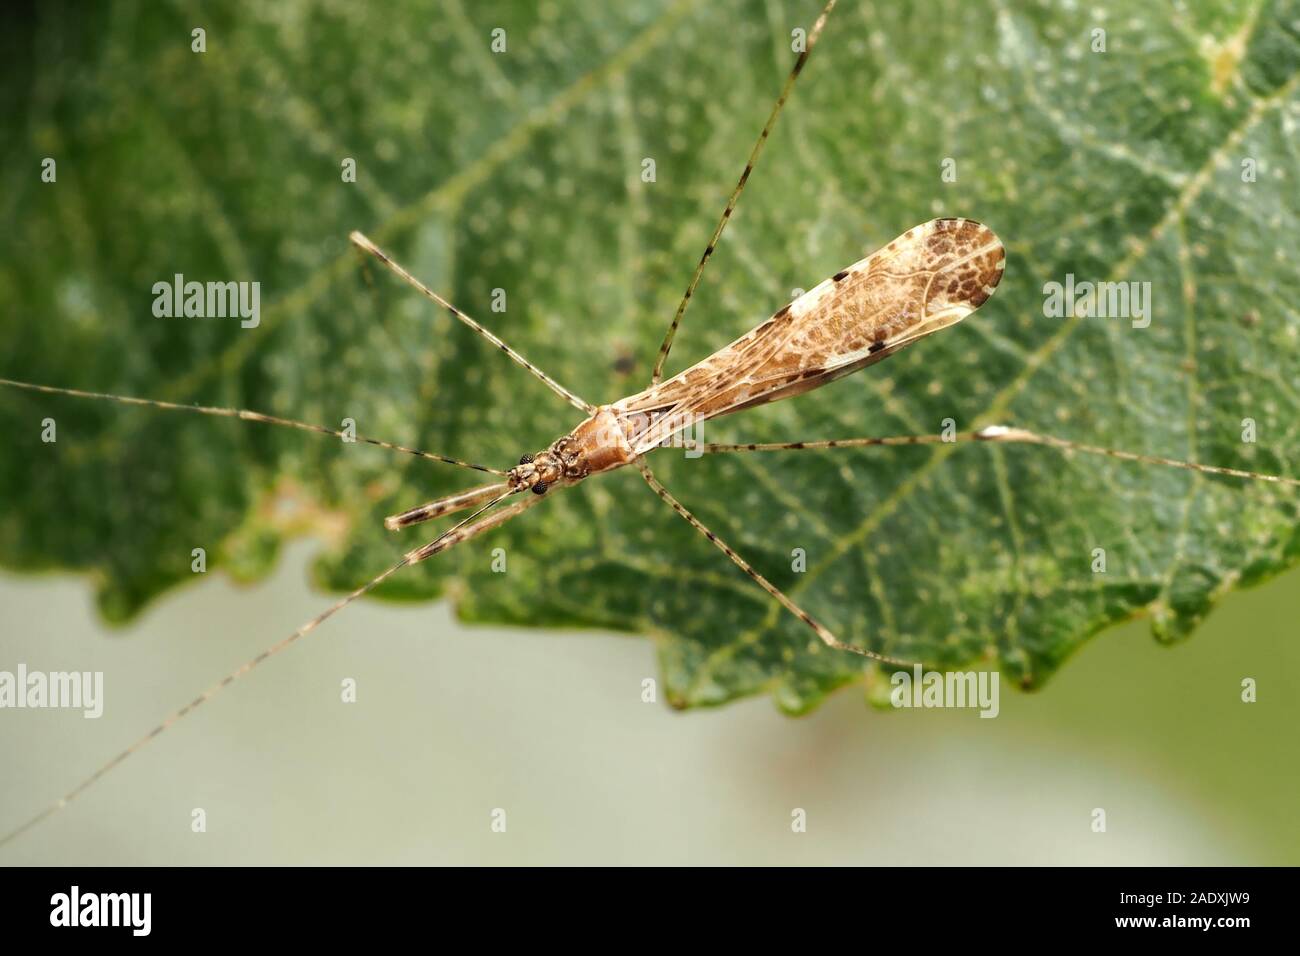 Dorsalansicht der Thread-legged Bug (Empicoris vagabundus) Kriechen auf Erle Blatt. Tipperary, Irland Stockfoto